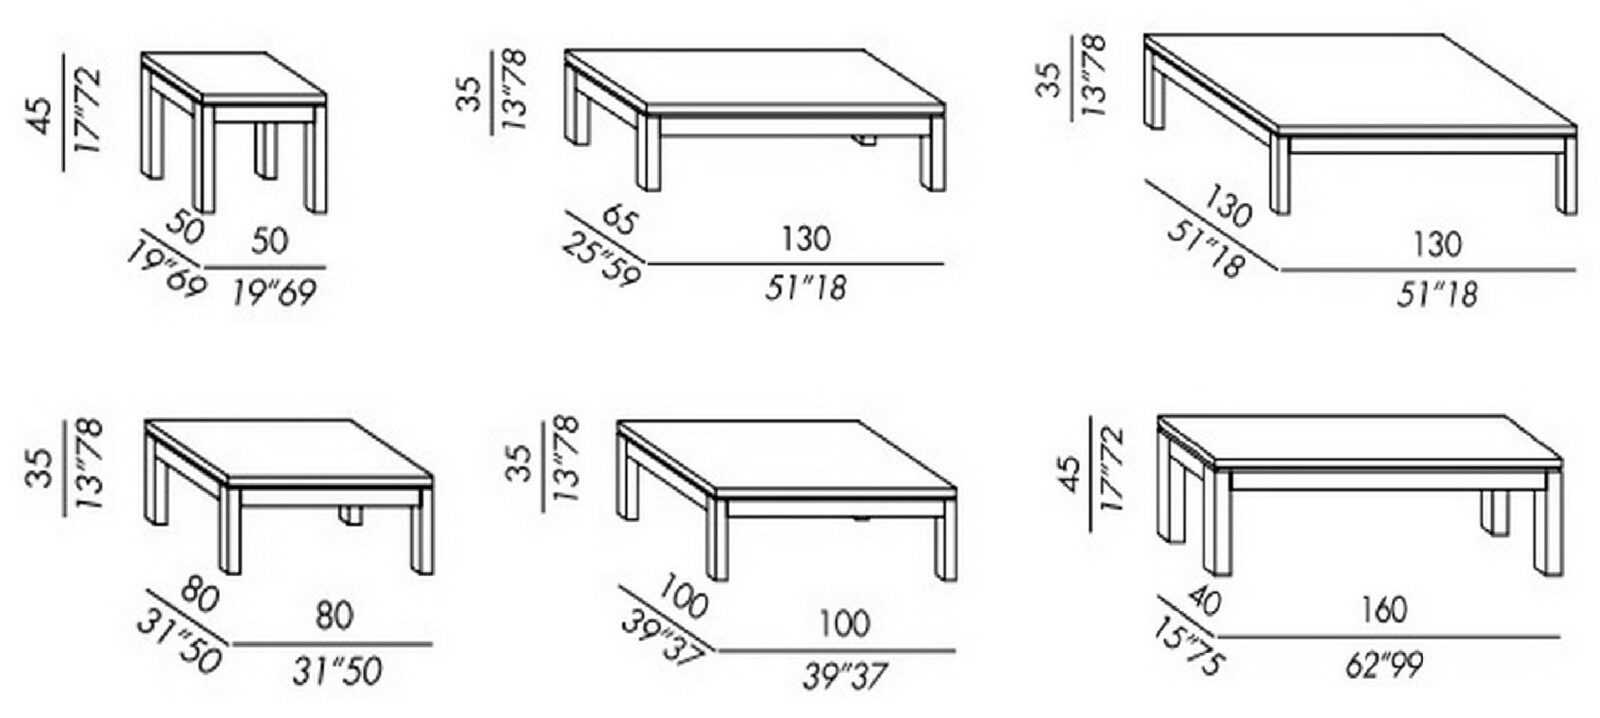 Как правильно подобрать высоту стола для взрослых и детей 15 - ДиванеТТо